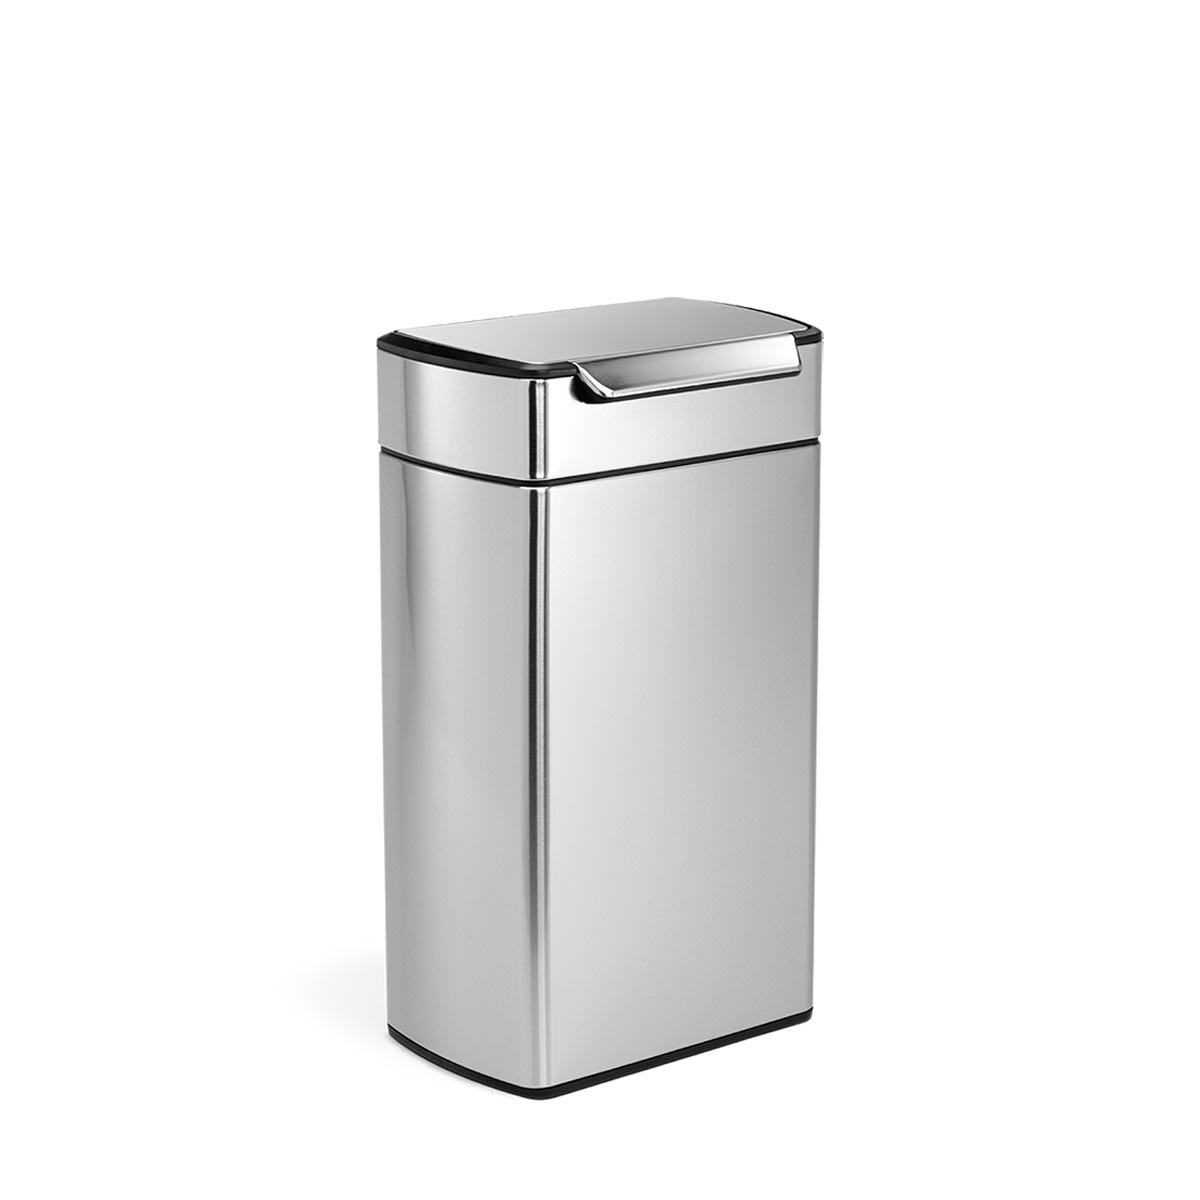 simplehuman 40 litre rectangular touch-bar can, fingerprint-proof stainless steel